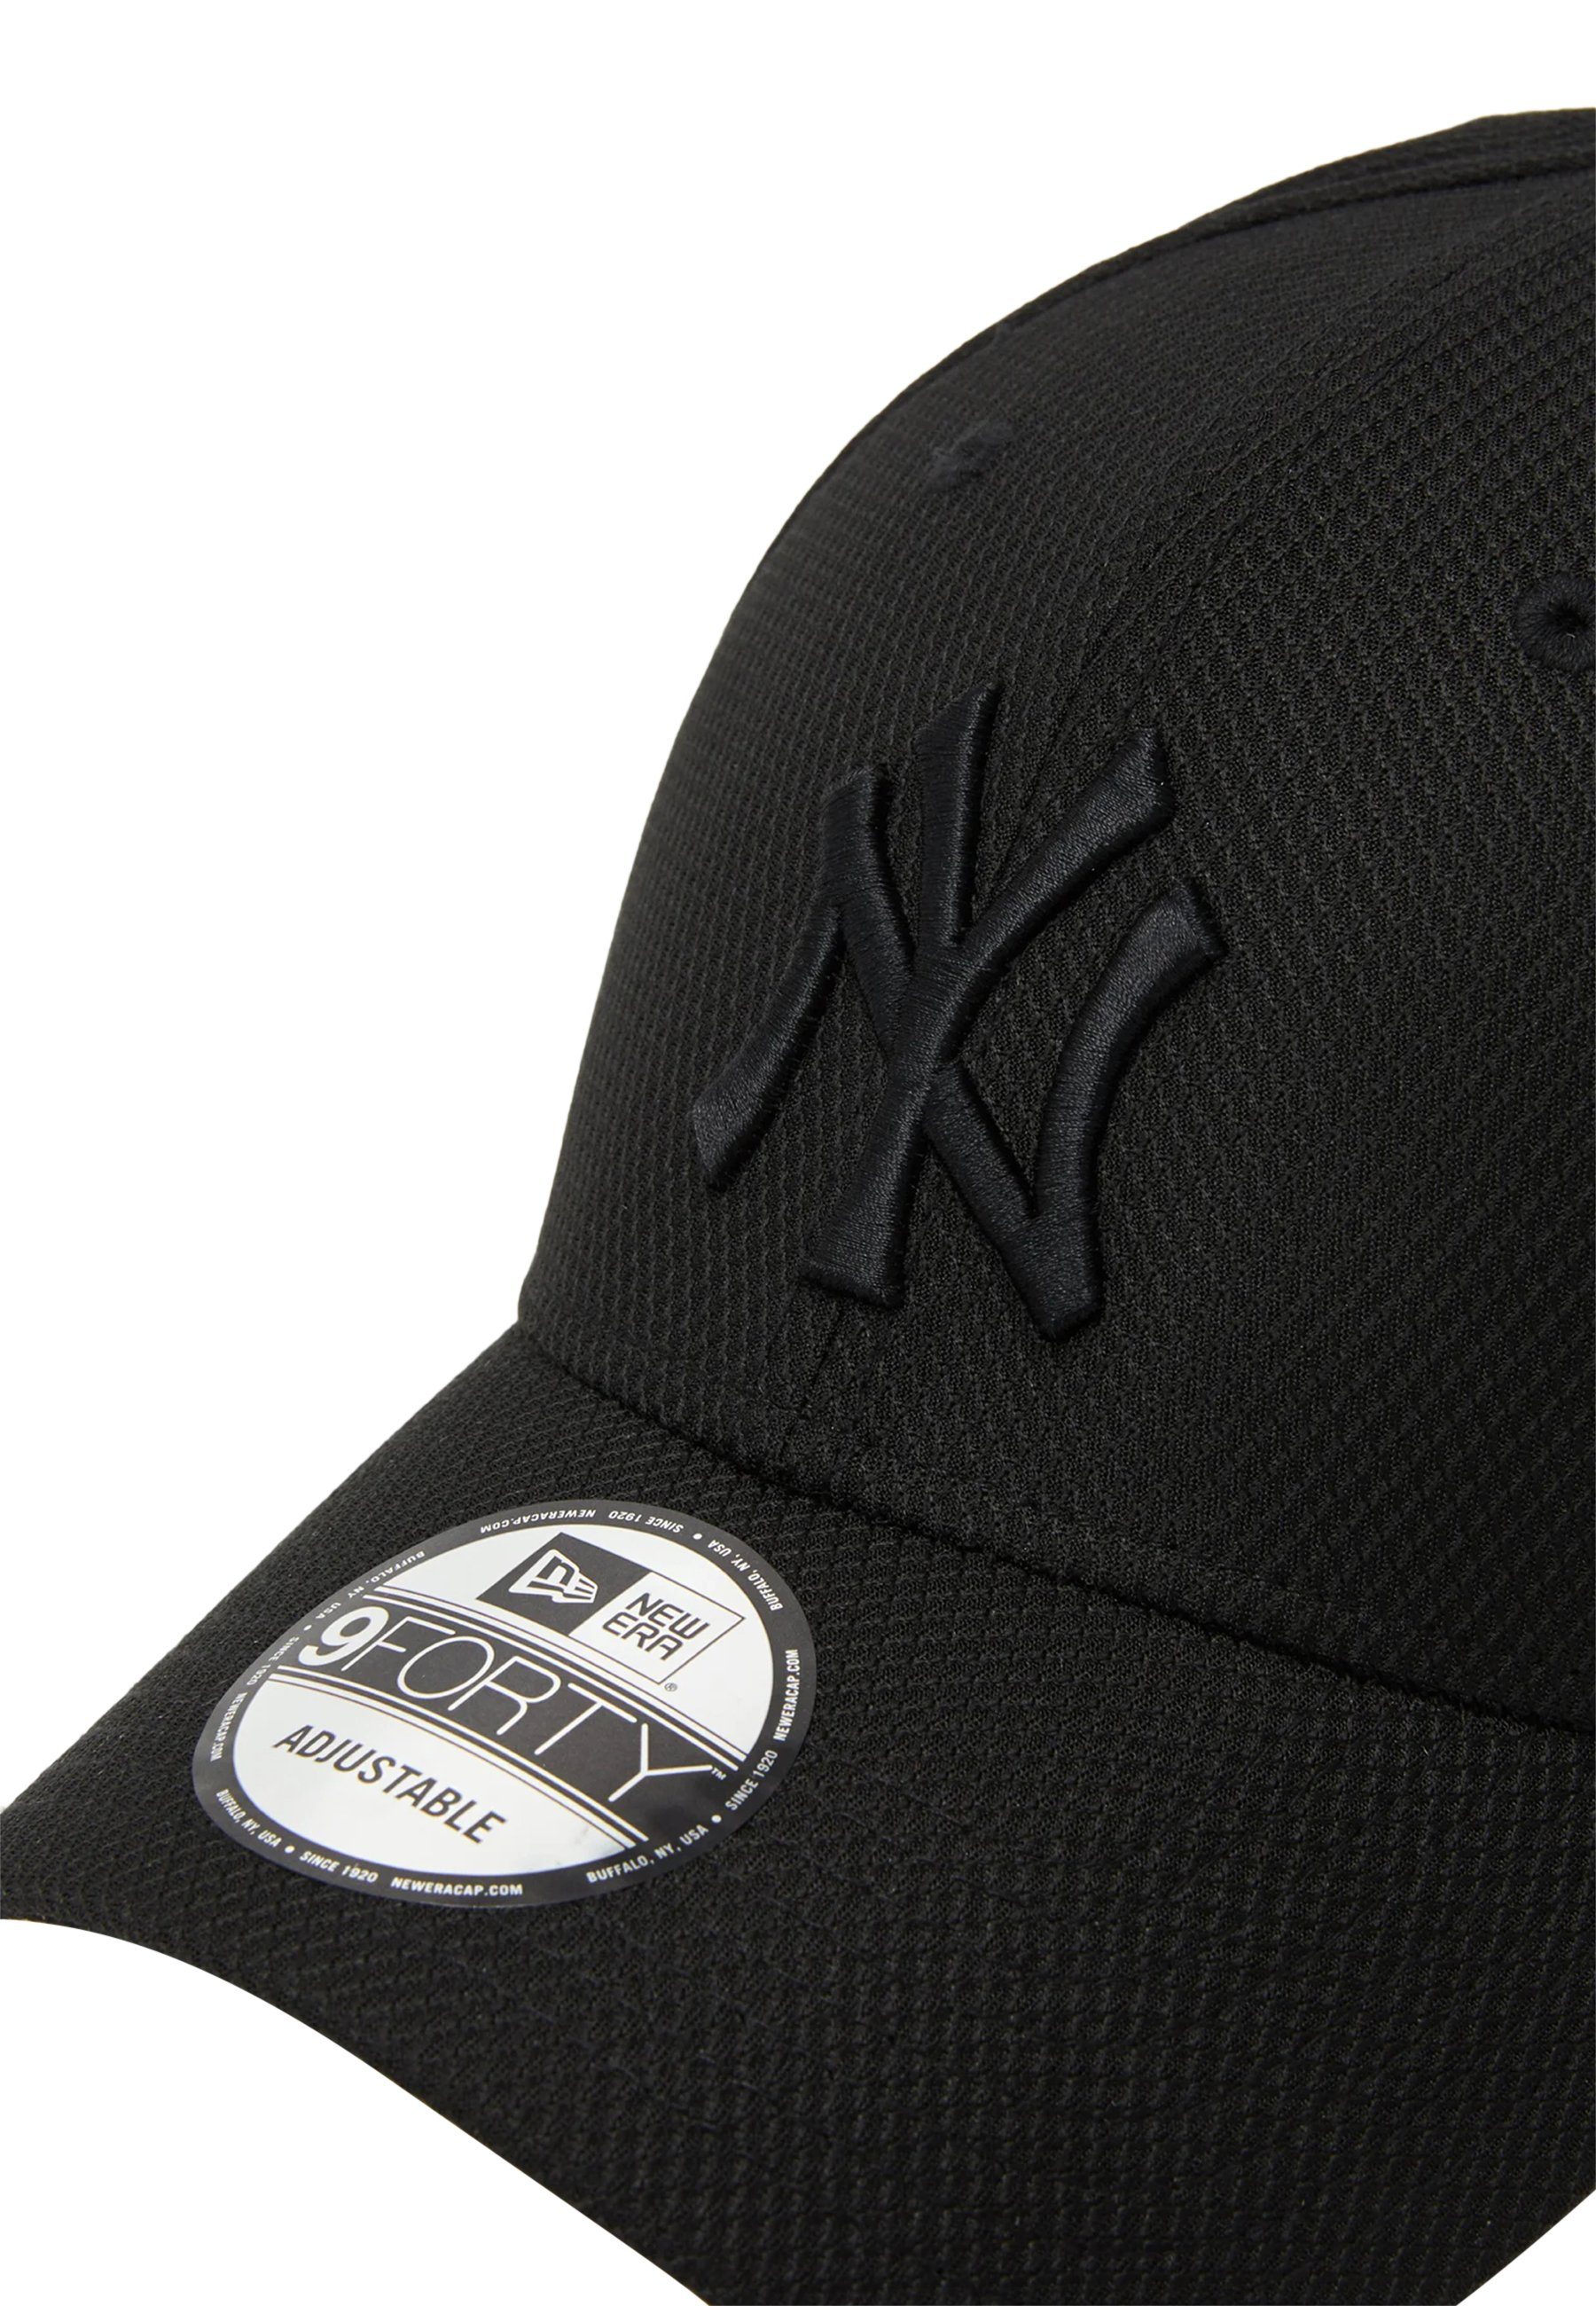 Era schwarz-schwarz Cap Yankees York New New Snapback (1-St)